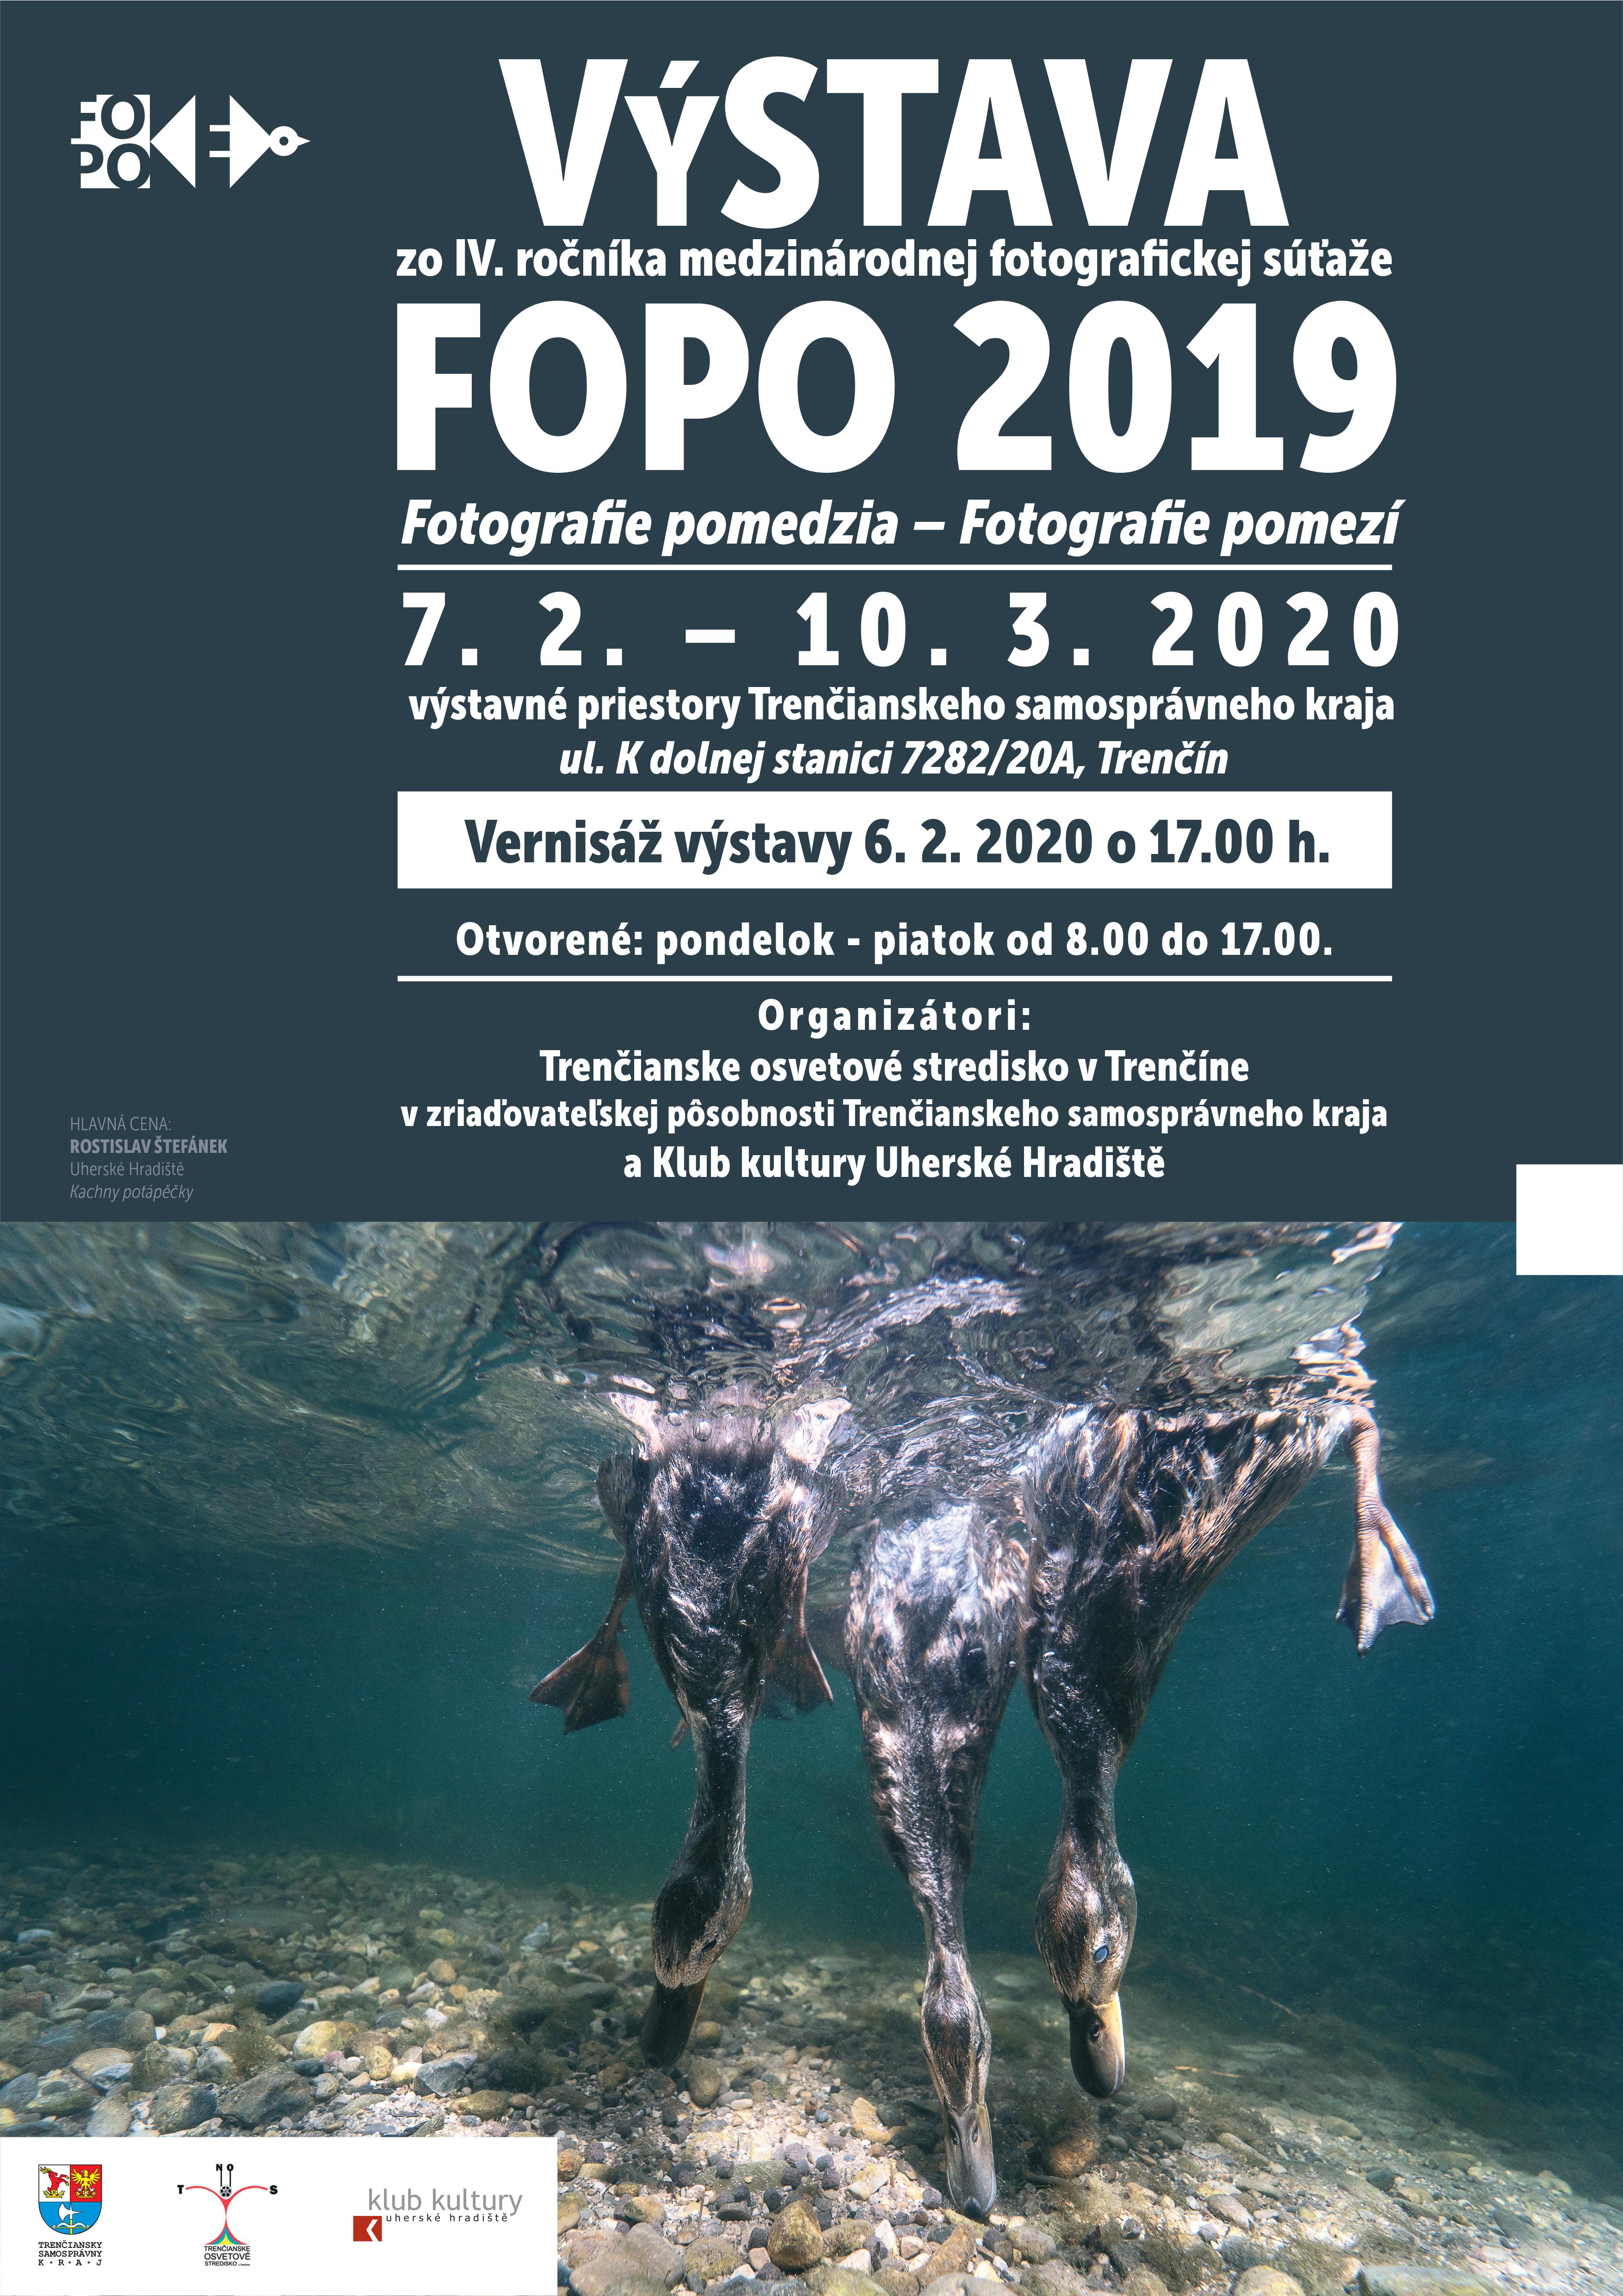 FOPO 2019 • Fotografie pomedzia - Fotografie pomezí